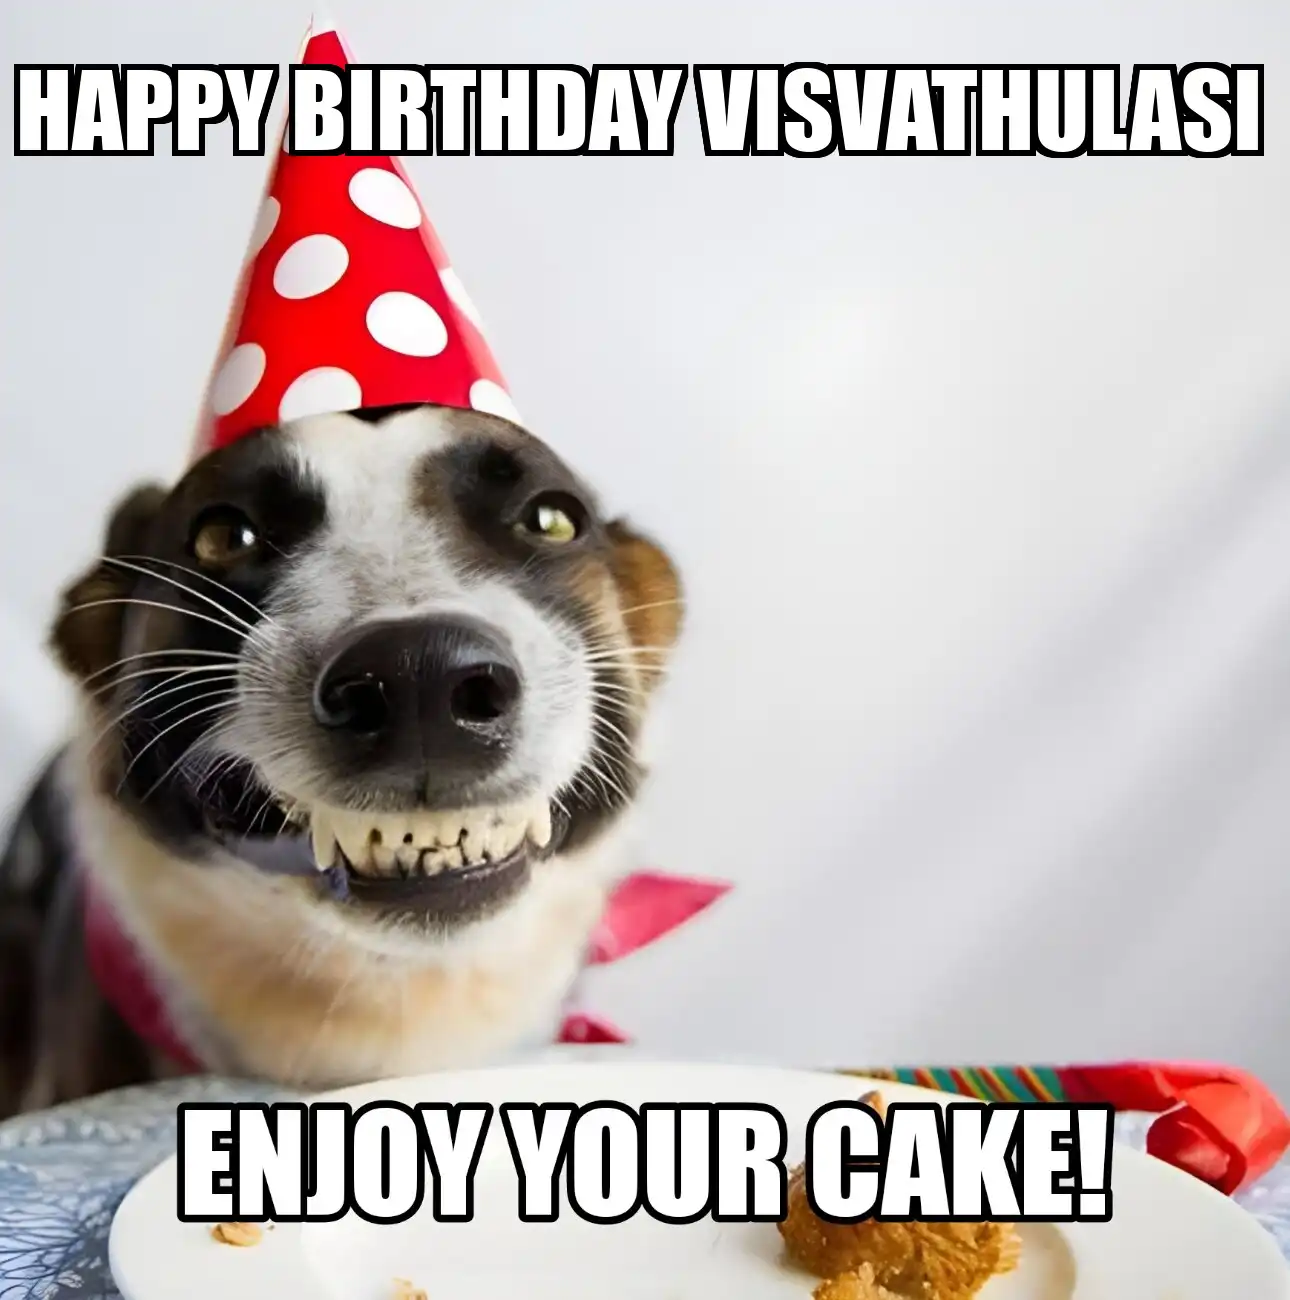 Happy Birthday Visvathulasi Enjoy Your Cake Dog Meme